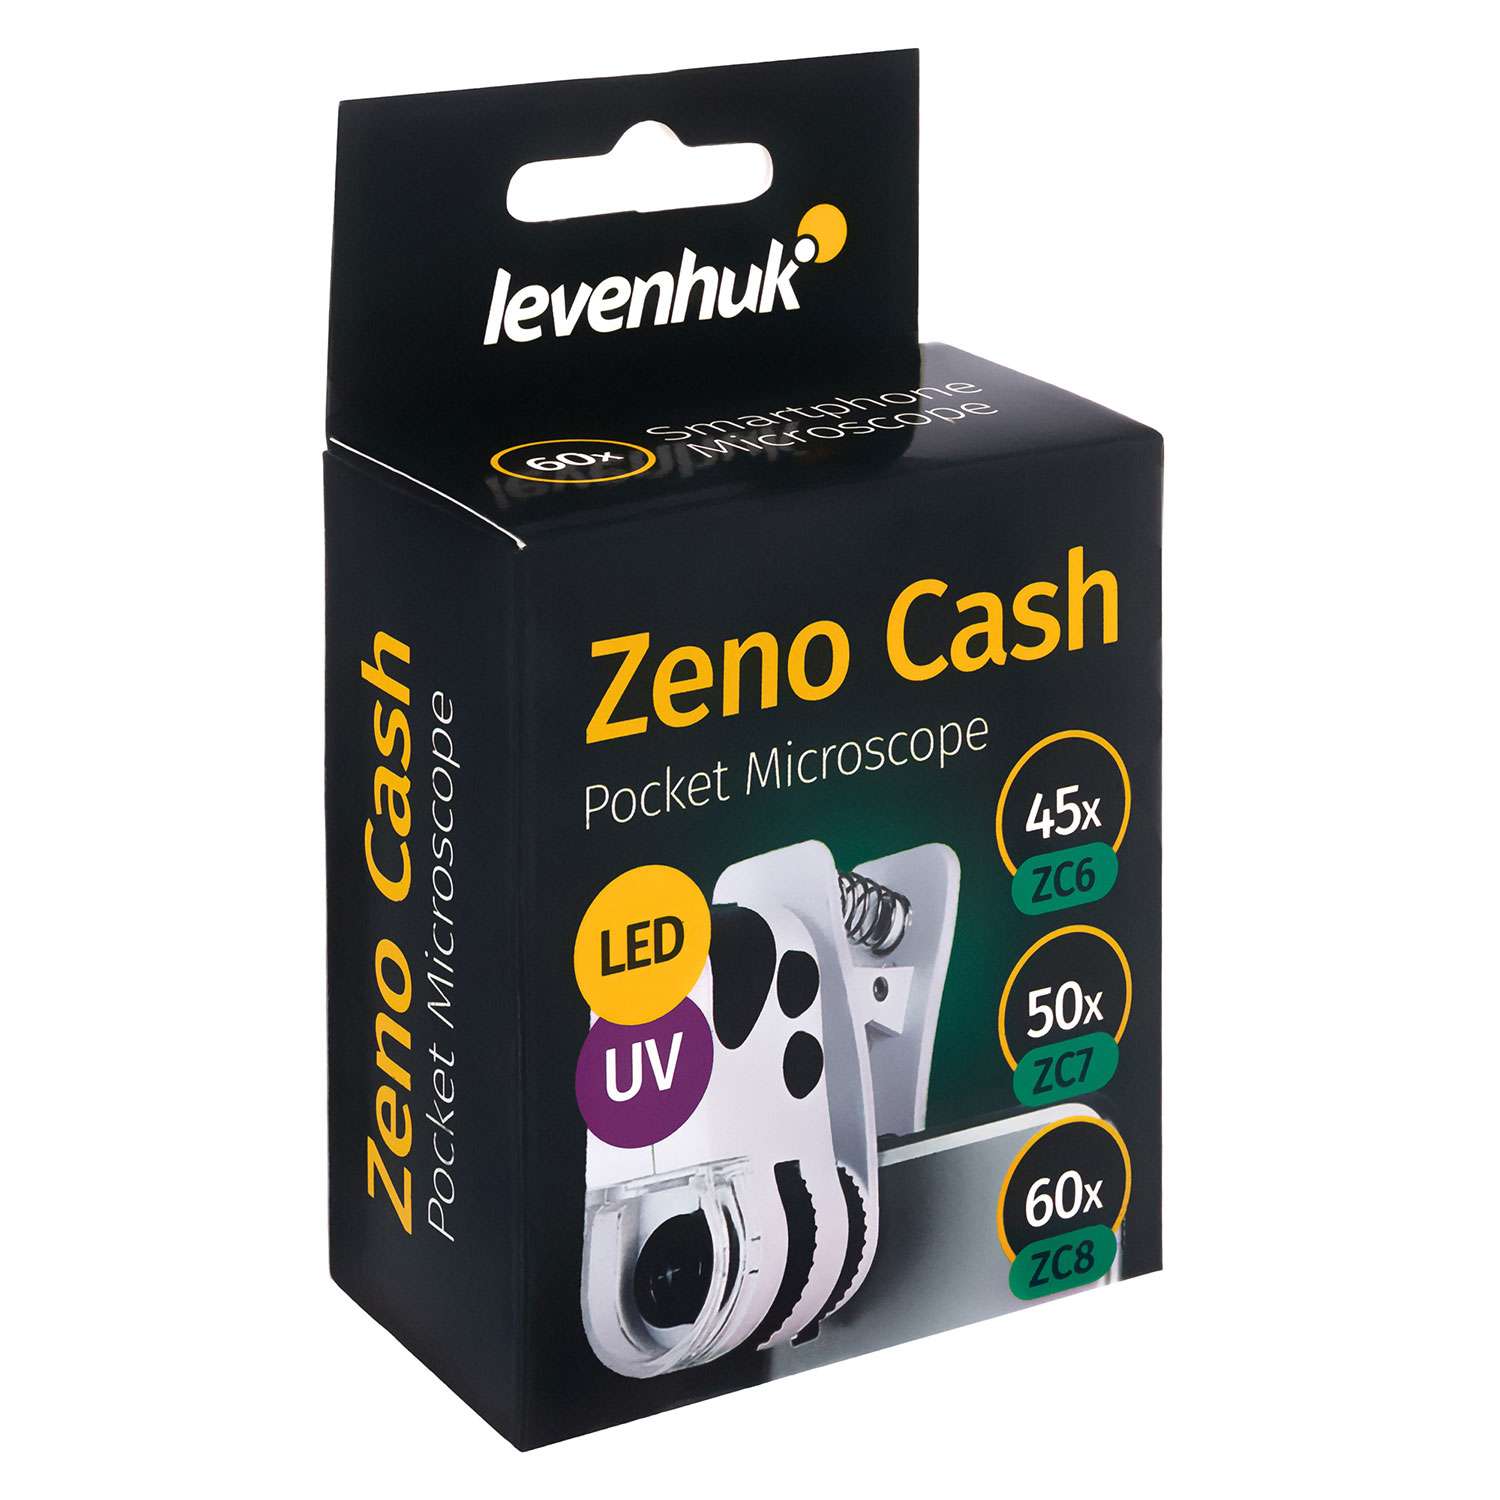 Микроскоп карманный Levenhuk Zeno Cash ZC8 - фото 9